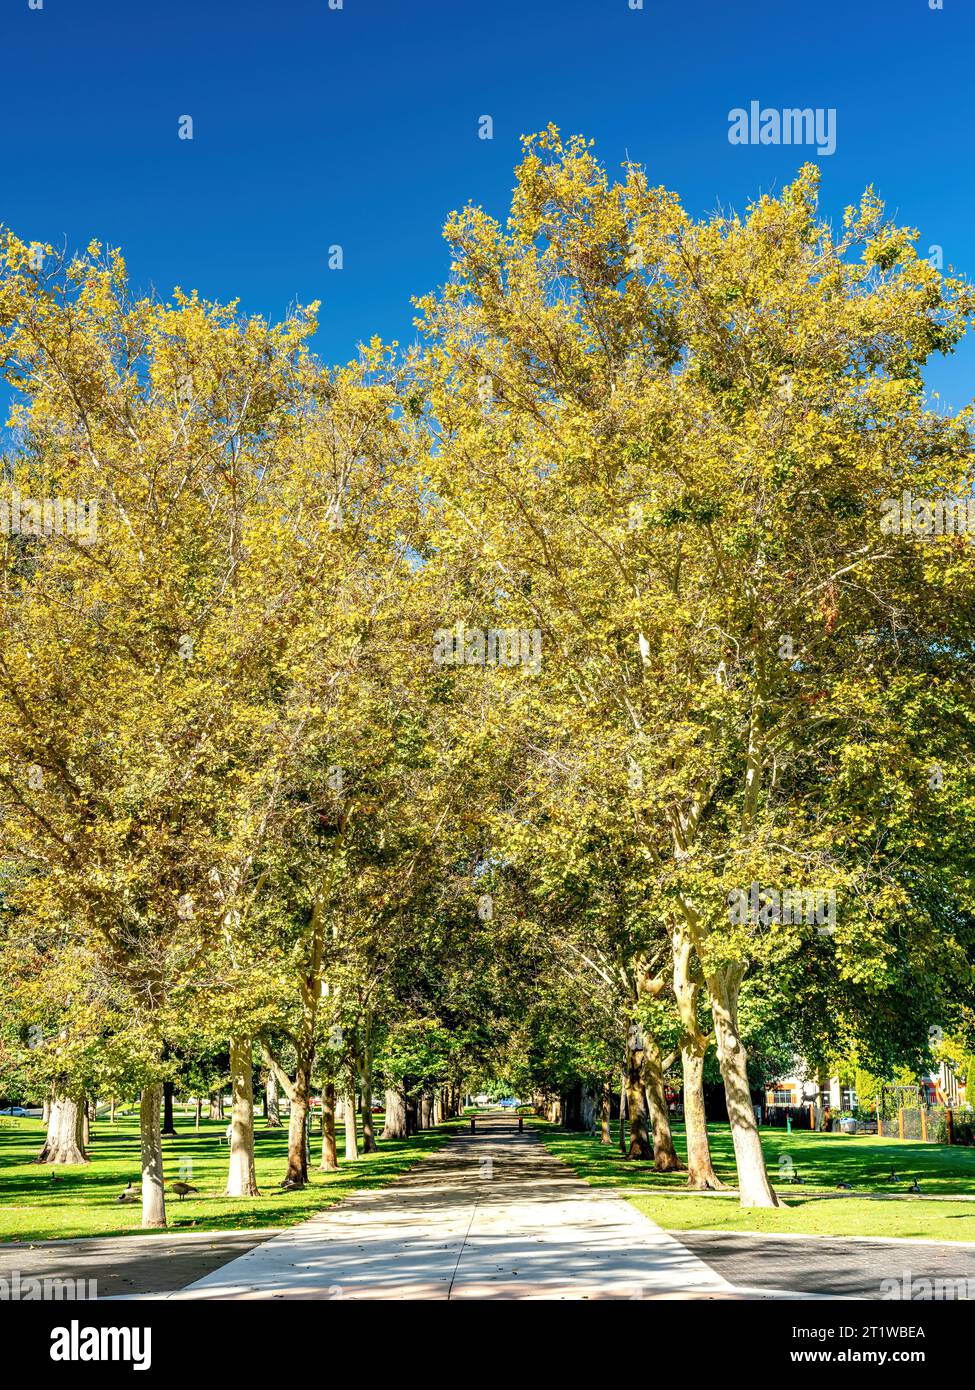 Tombez des arbres colorés avec un trottoir dans un parc de Boise City Banque D'Images